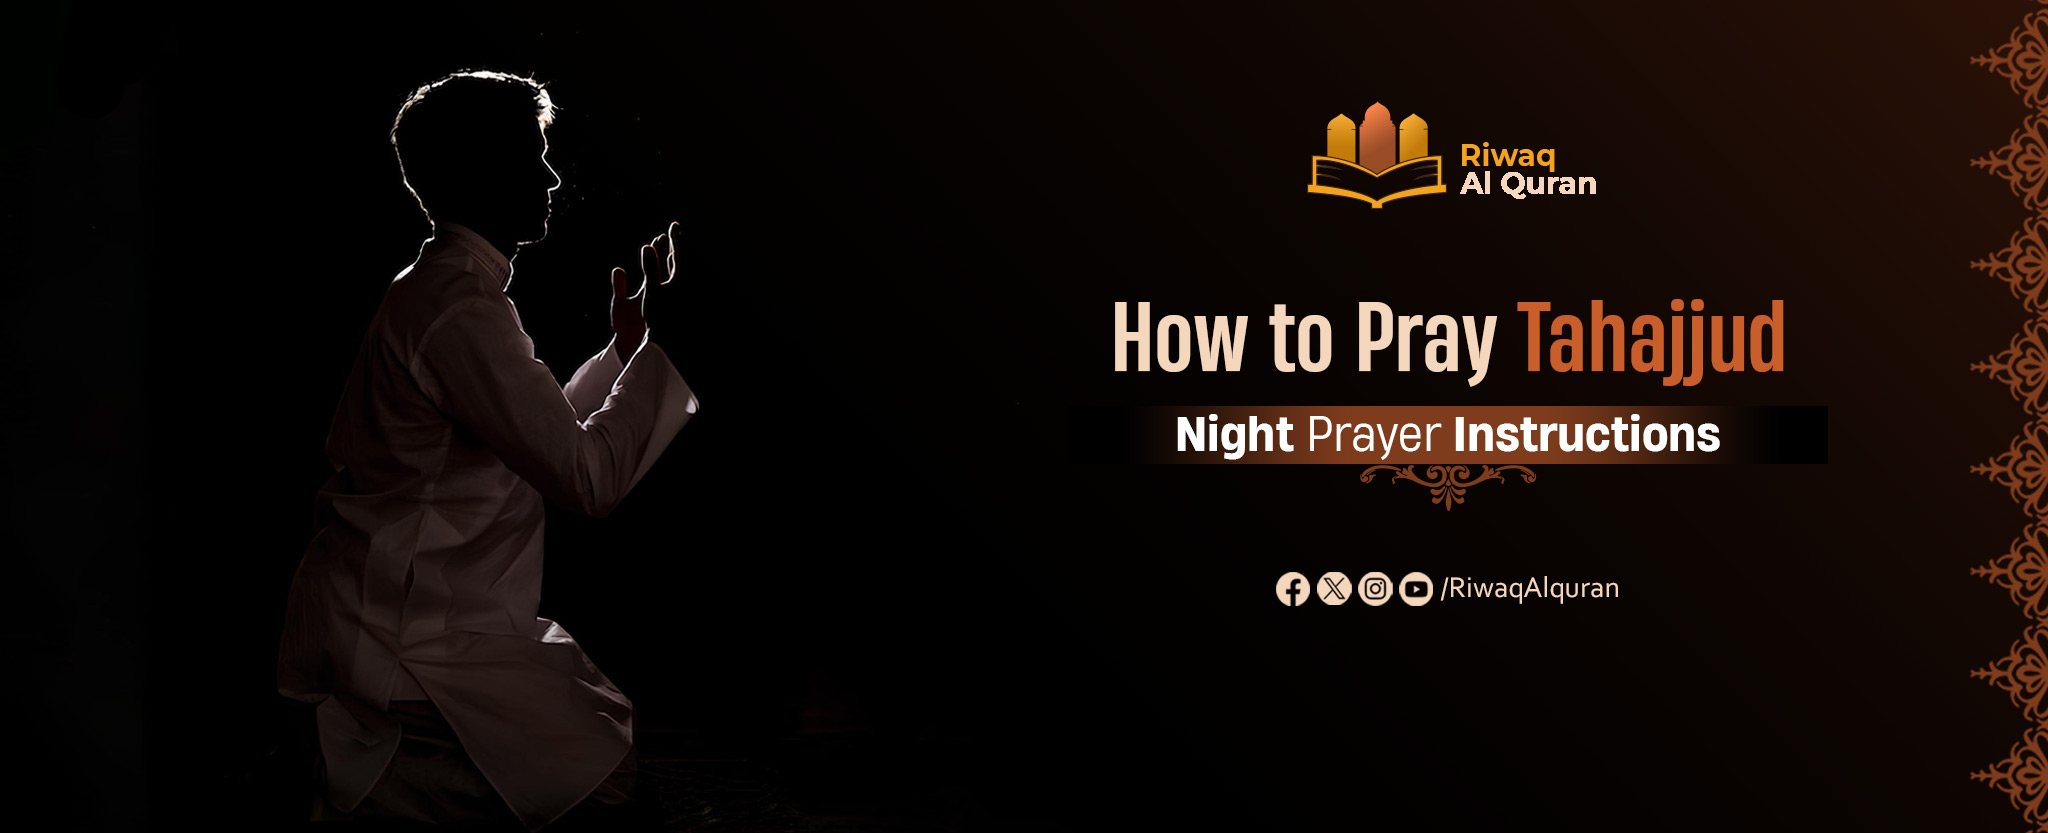 How To Pray Tahajjud And The Night Prayer